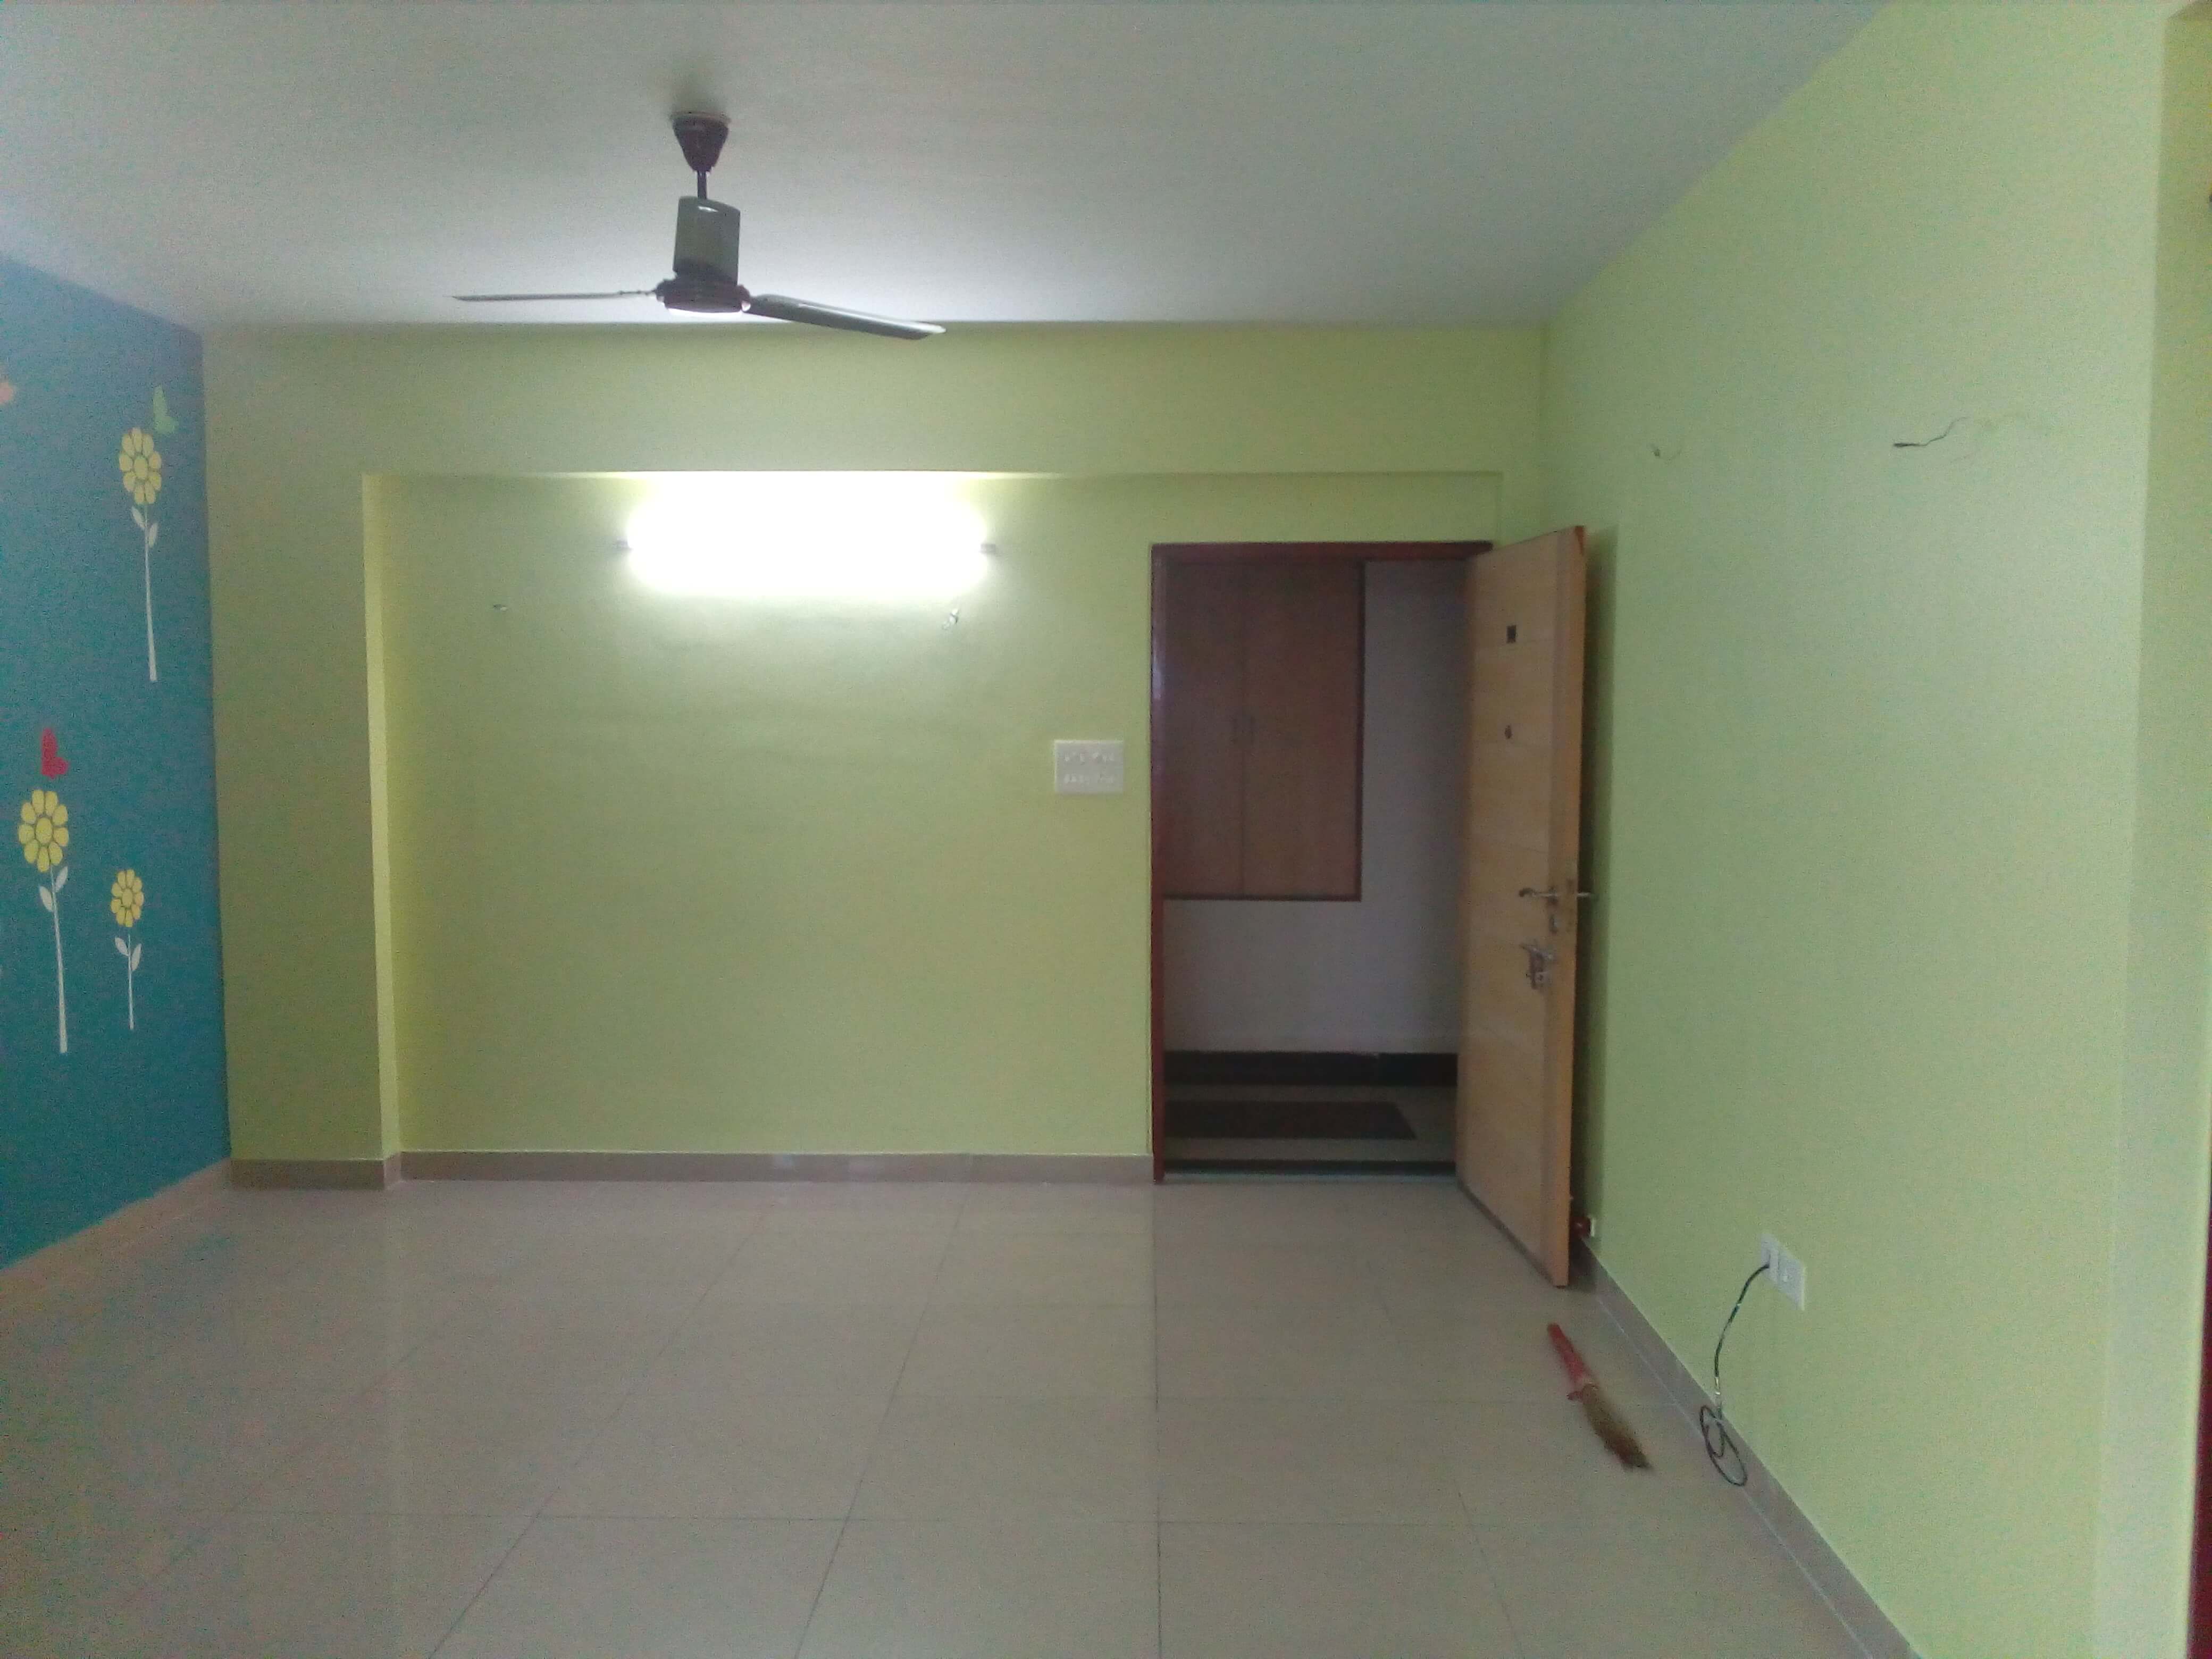 Flat For Rent in Behala Chowrasta,Kolkata (Id:21818)